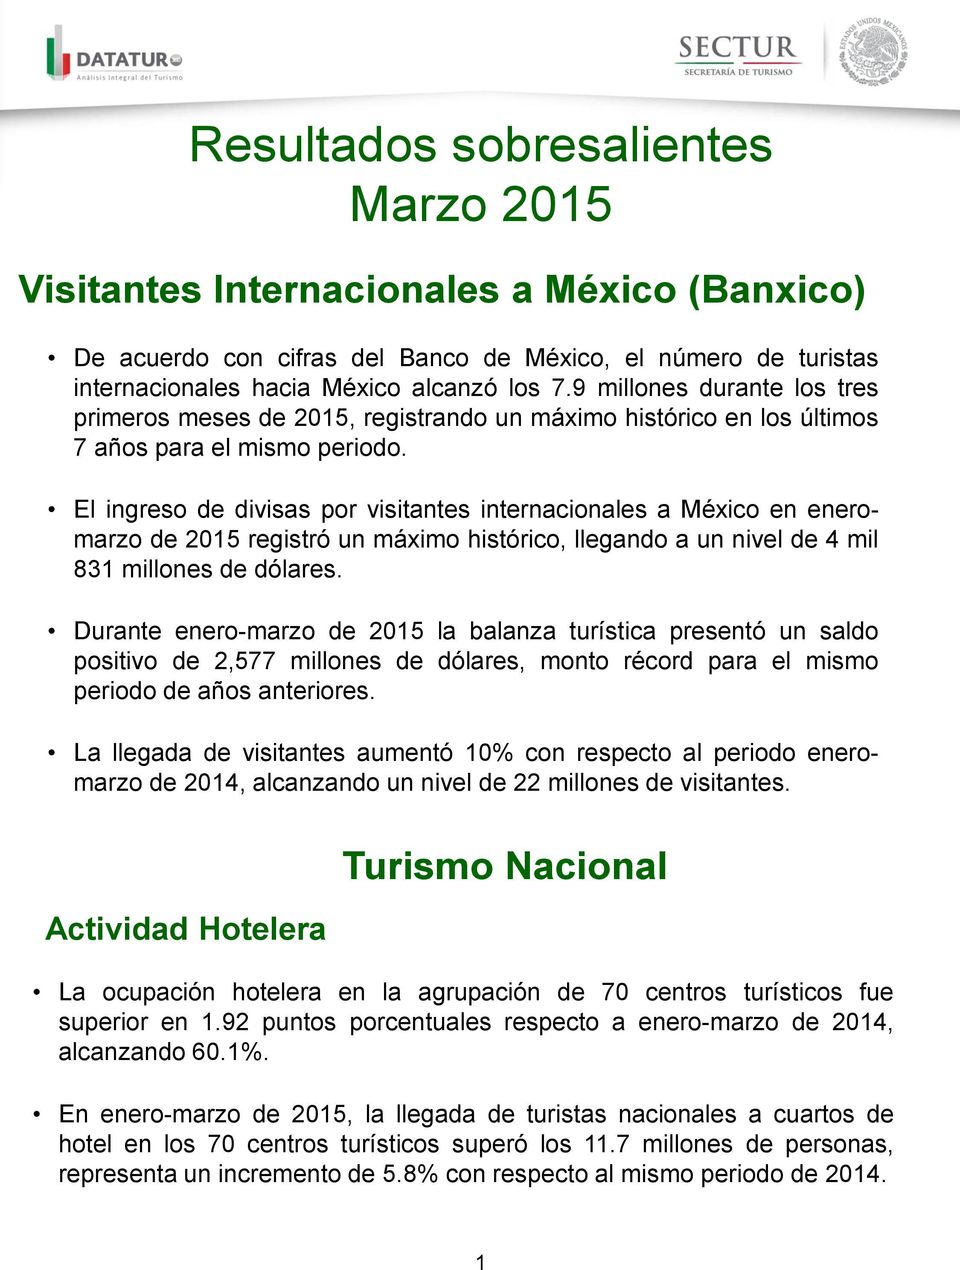 El ingreso de divisas por visitantes internacionales a México en eneromarzo de 2015 registró un máximo histórico, llegando a un nivel de 4 mil 831 millones de dólares.